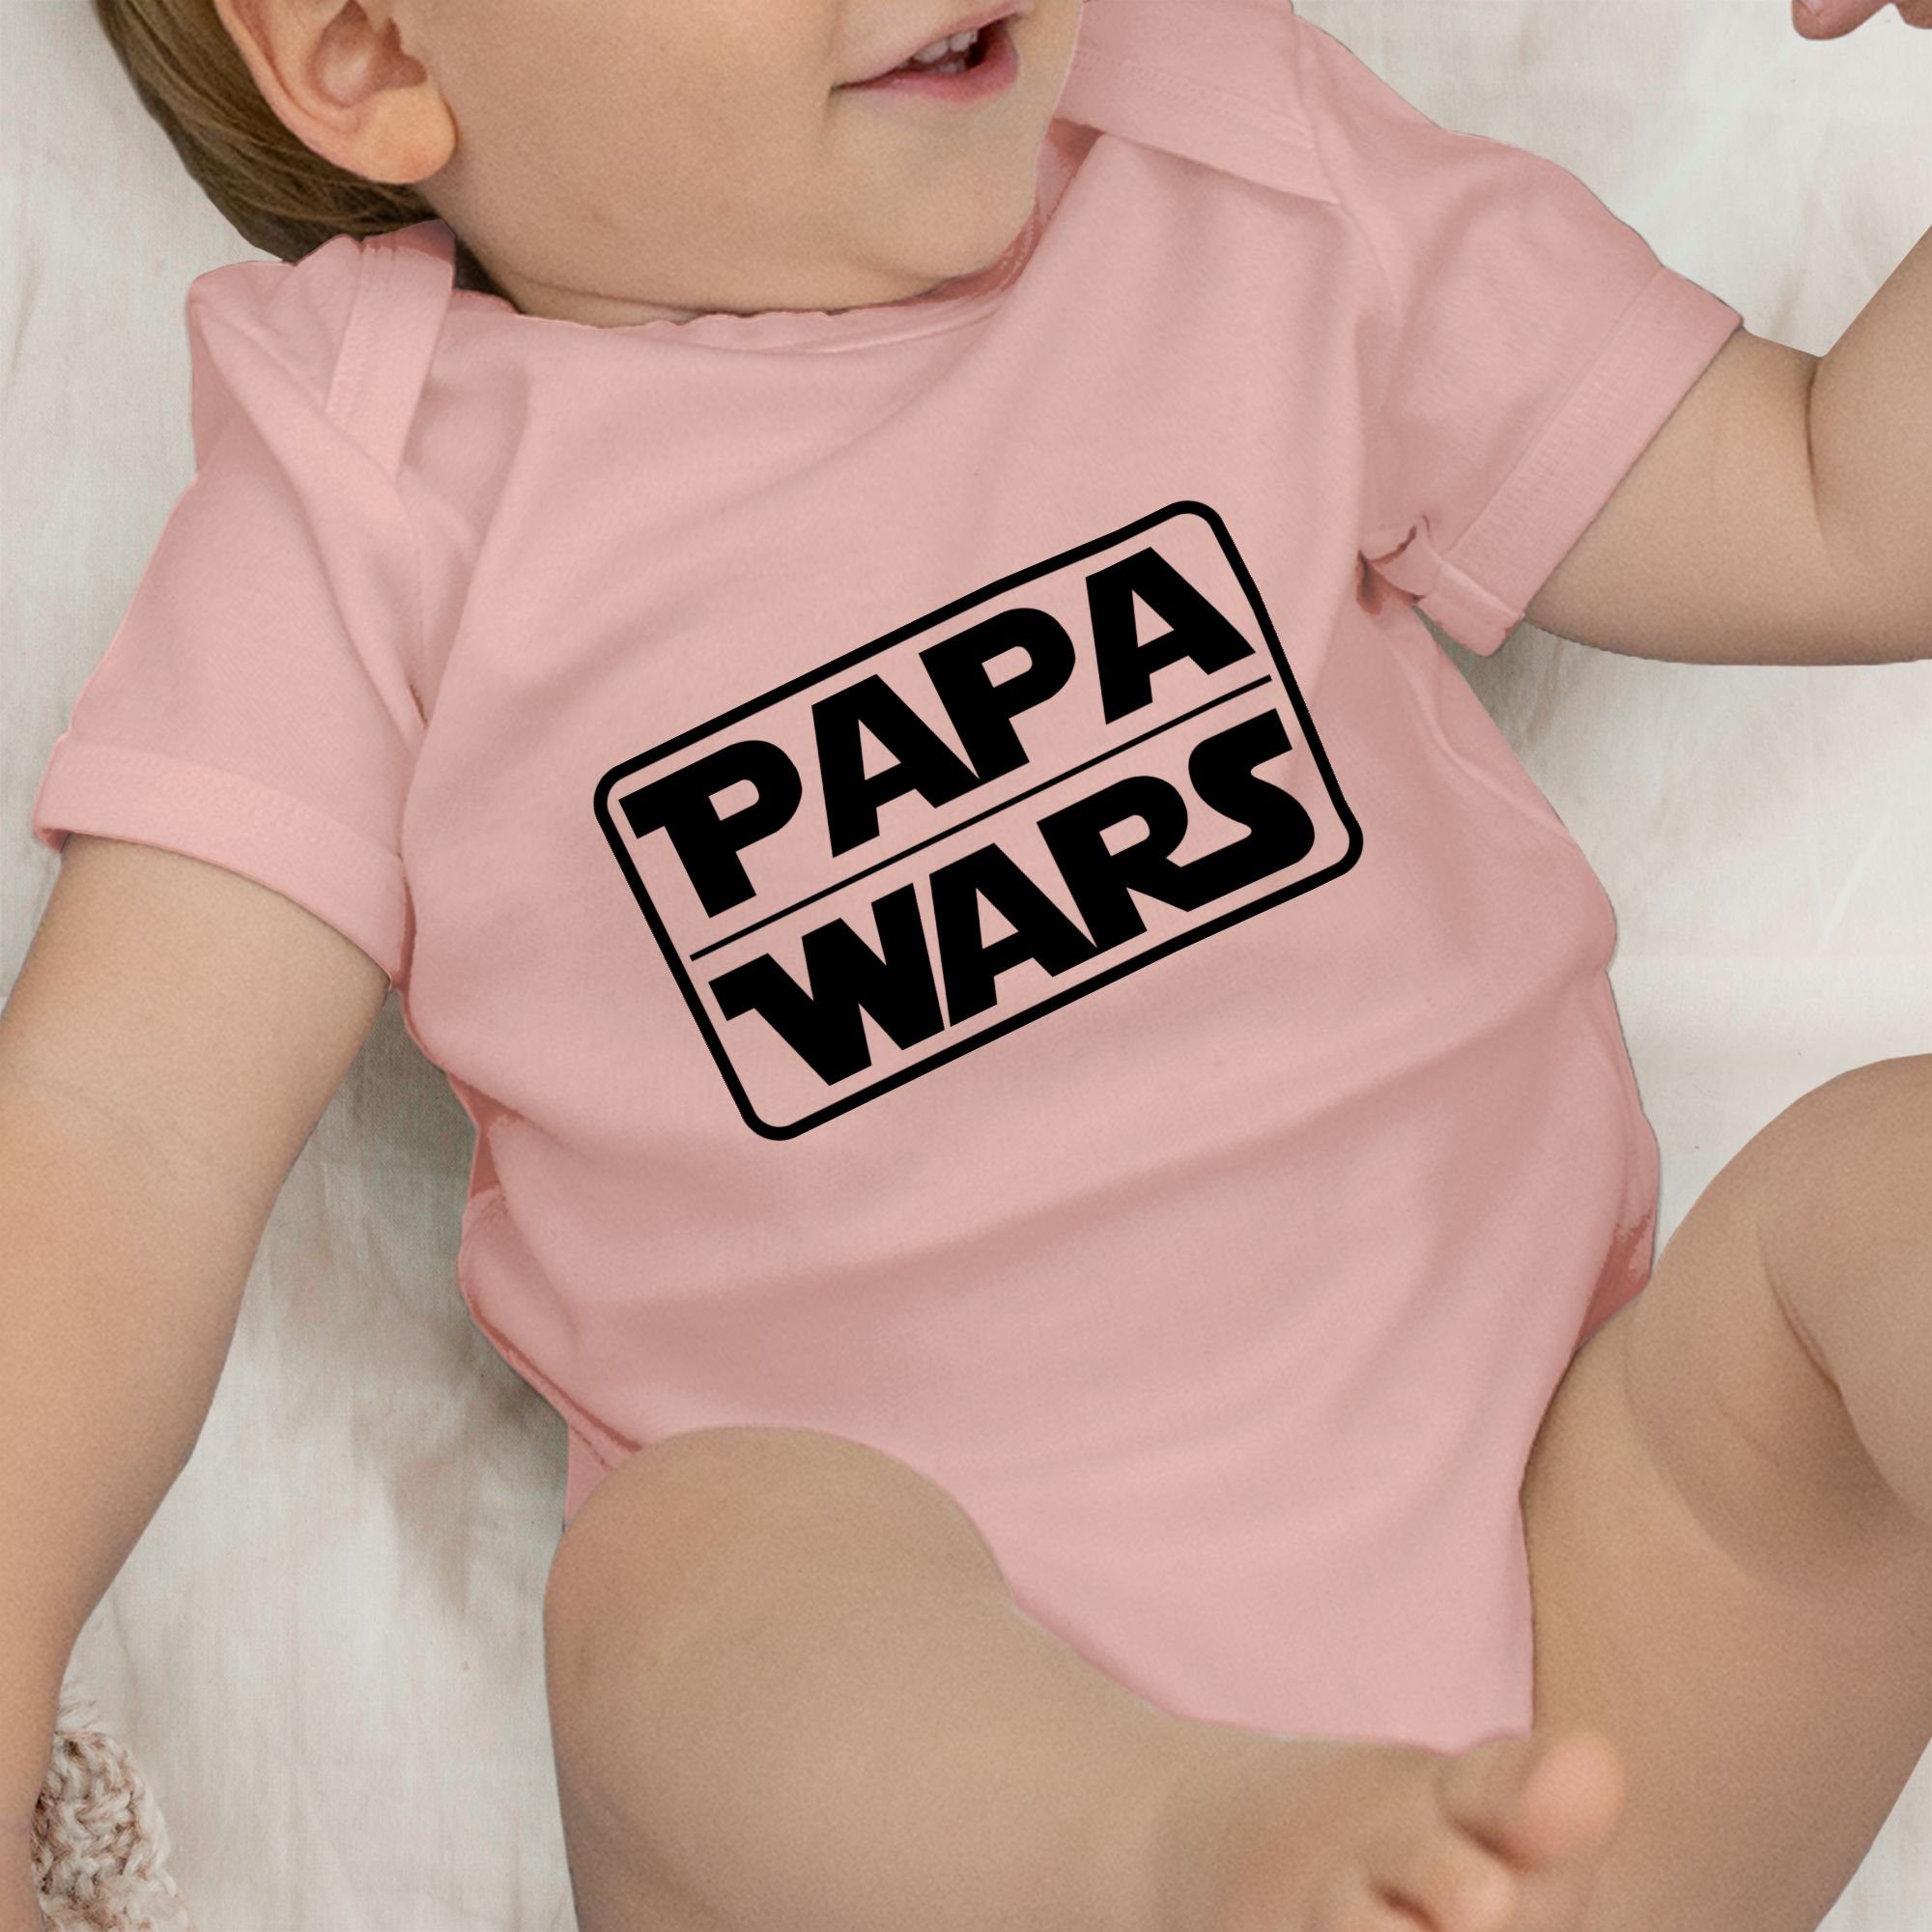 Kinder Mädchen (Gr. 50 - 92) Shirtracer Shirtbody Papa Wars - Statement Sprüche Baby - Baby Body Kurzarm Spruch Sprüchen Spruchs